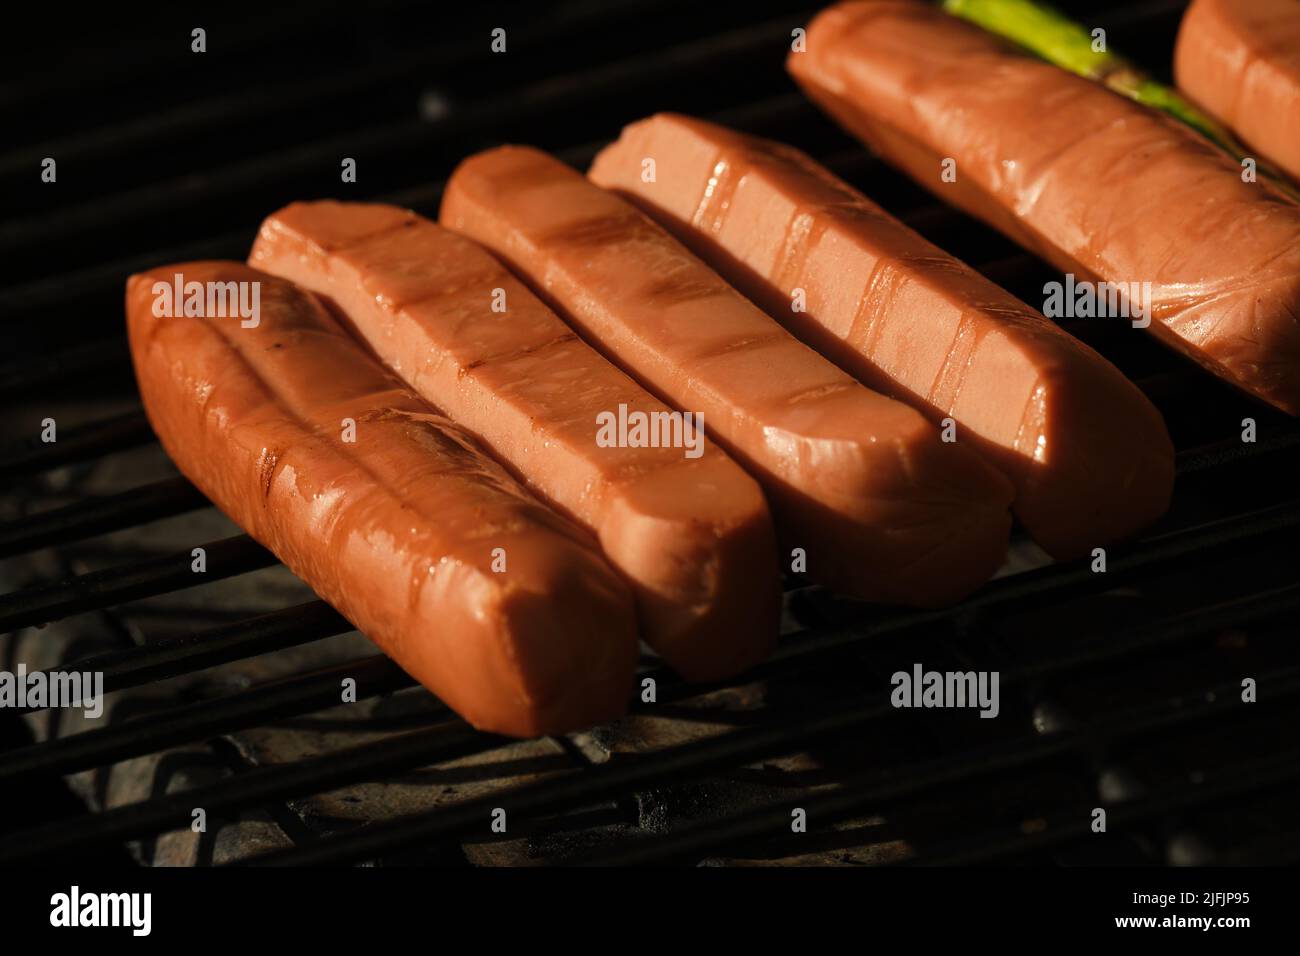 Una vista ravvicinata dei cuccioli di cani vegetariani grigliati su una griglia per barbecue. Foto Stock